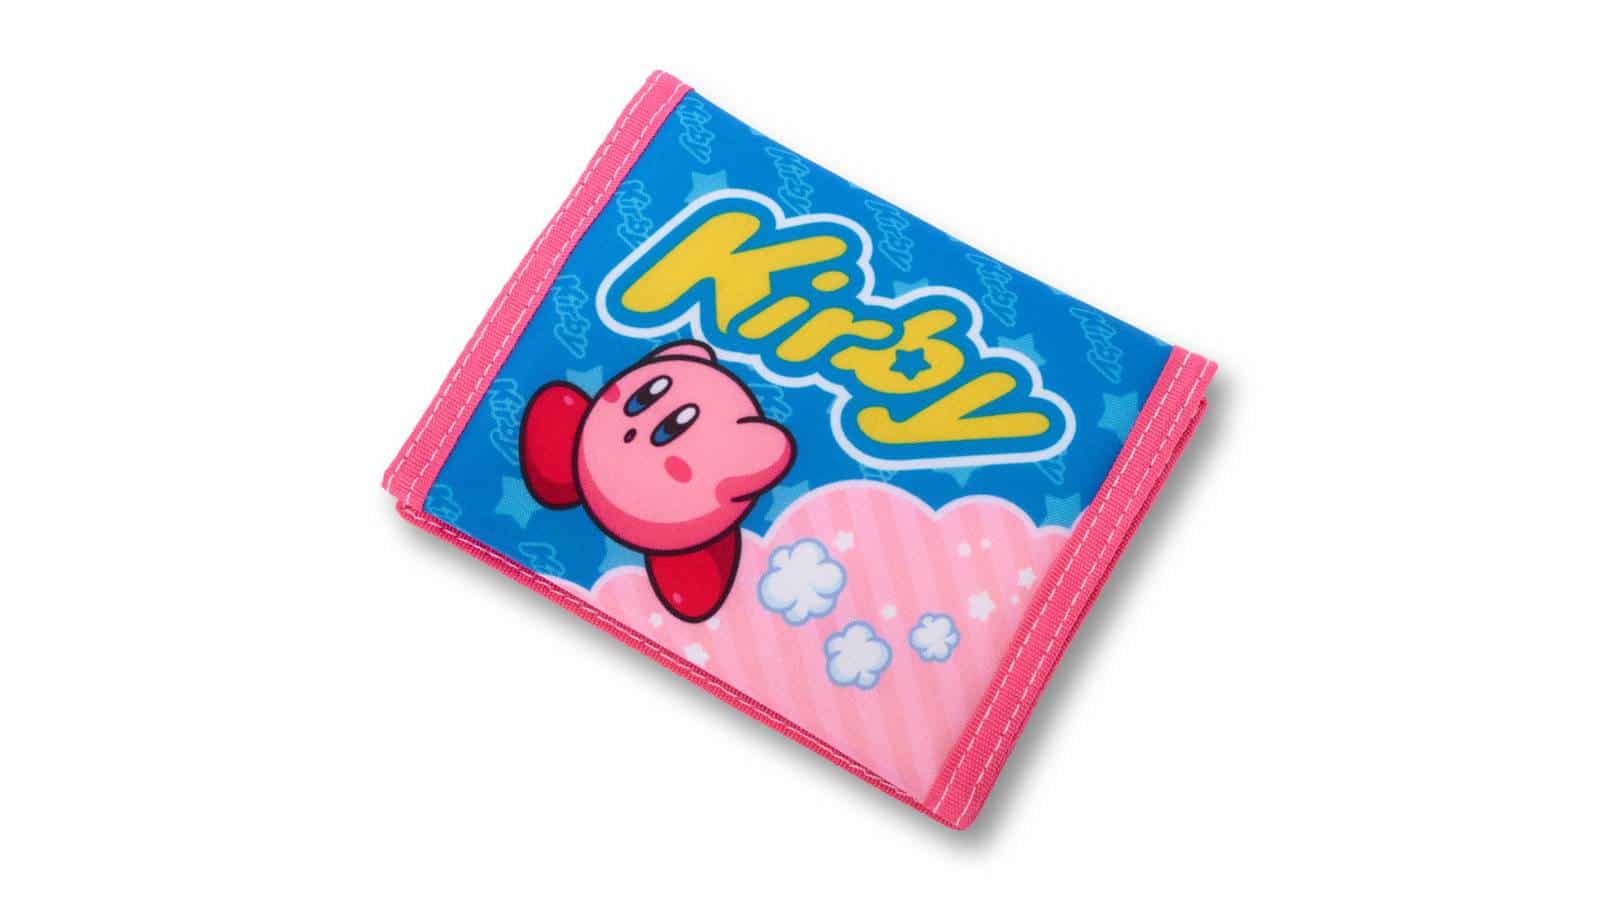 ארנק לכרטיסי משחק - Kirby